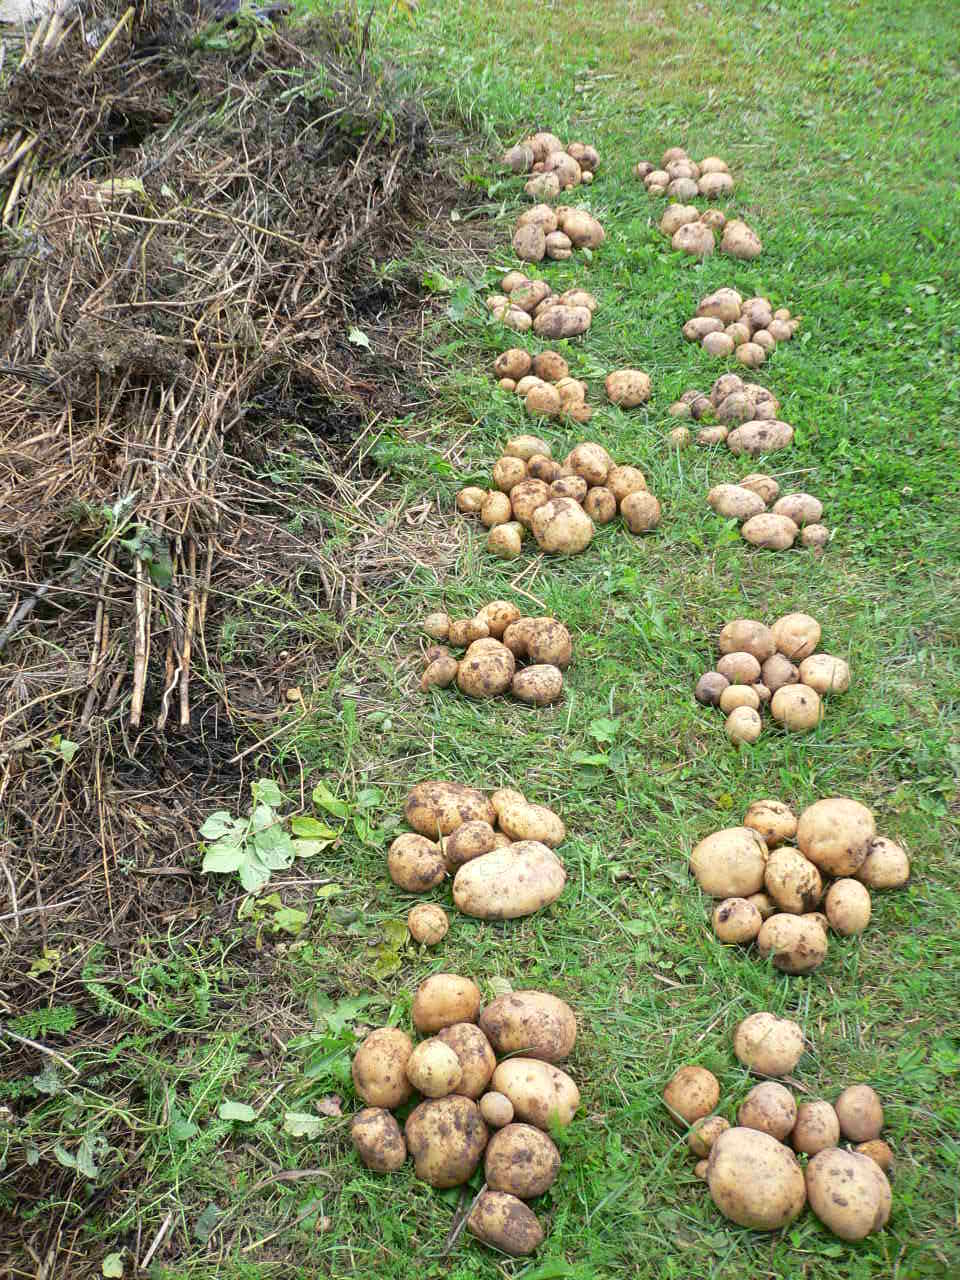 Посадка картофеля под солому: огород без хлопот, технология как выращивать и сажать под сено, способы, отзывы, с чего начать, в коробах, в ведре, агротехника